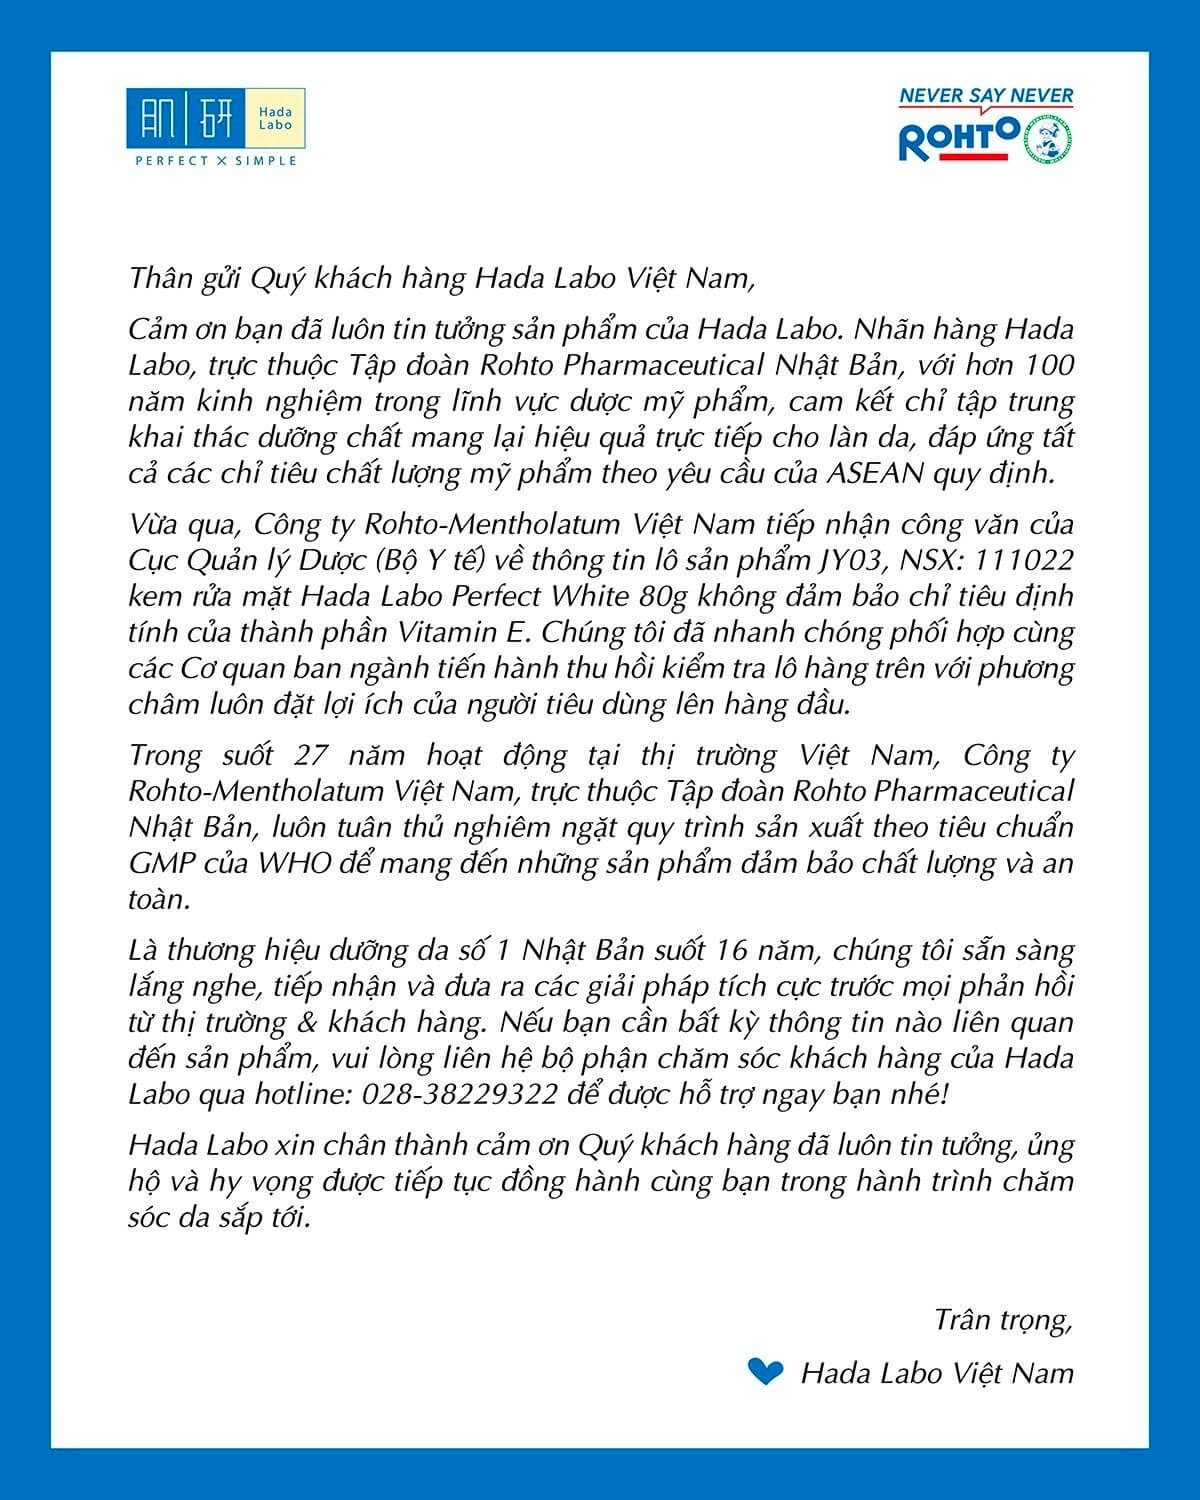 Thông báo từ thương hiệu Hada Labo về sản phẩm sữa rửa mặt tại Việt Nam